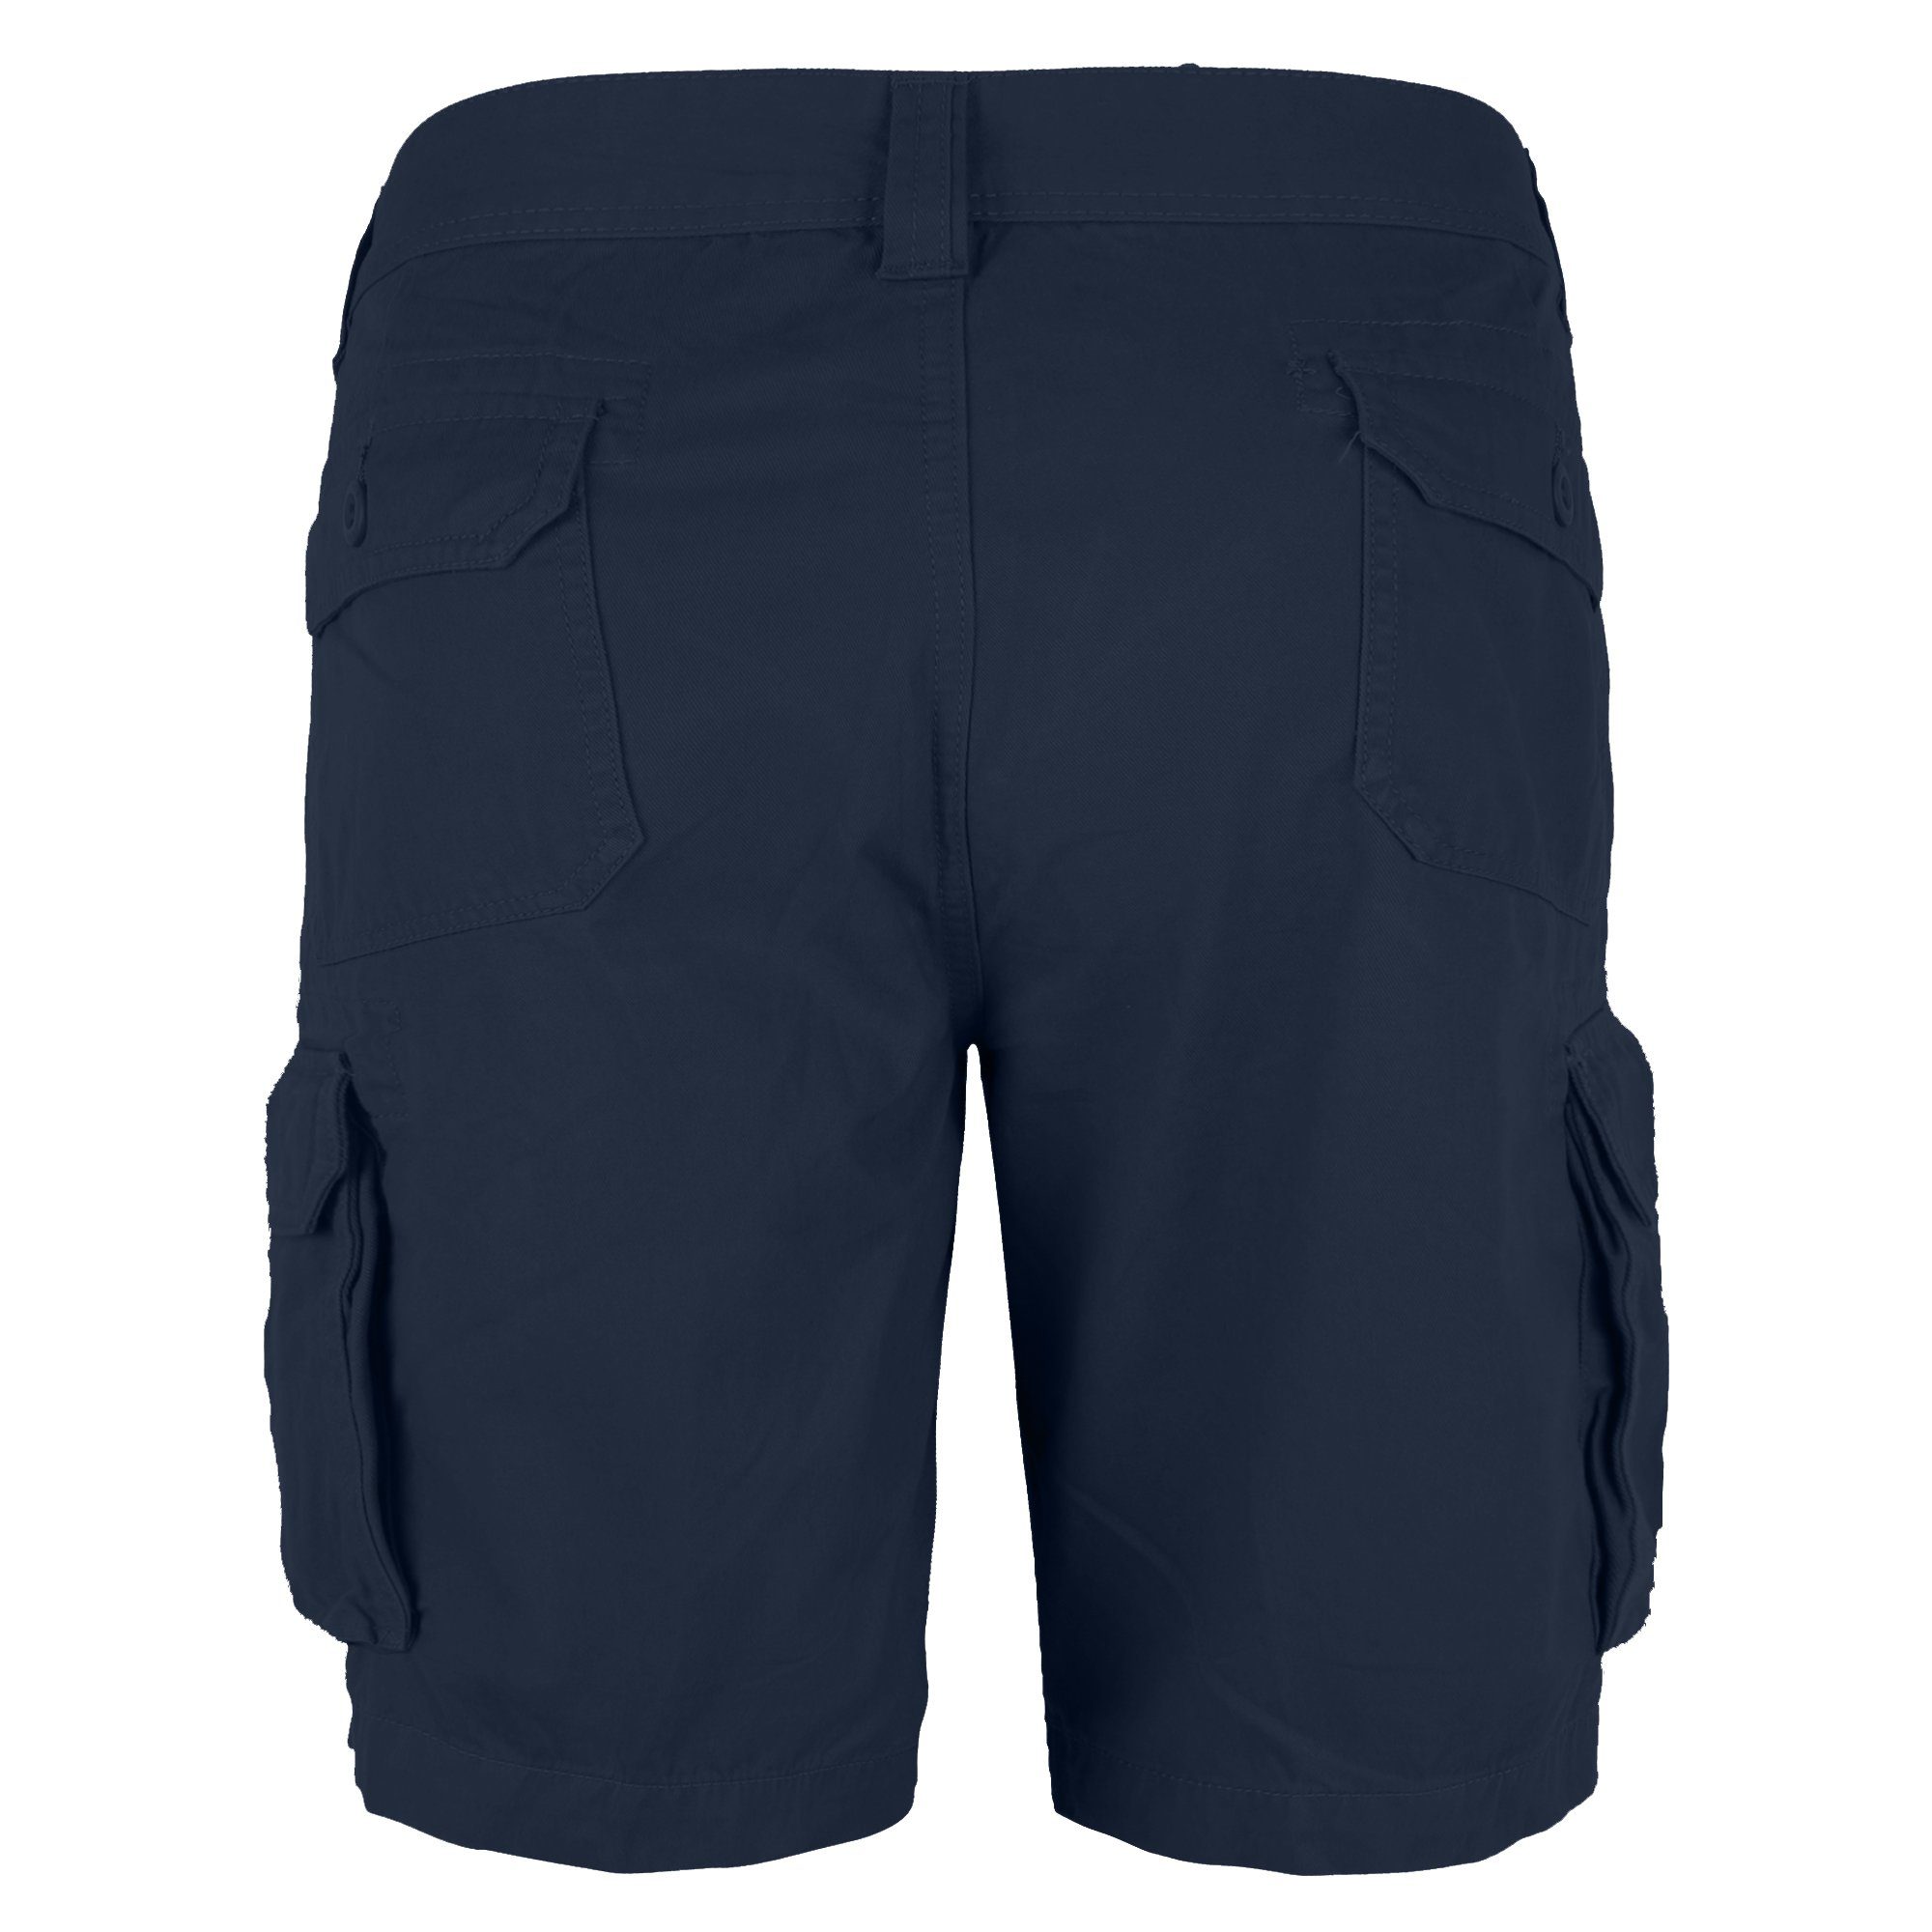 BlauerHafen Cargoshorts Herren Cargo Shorts 100% Bermuda Navy Passform Hose Normale Baumwolle